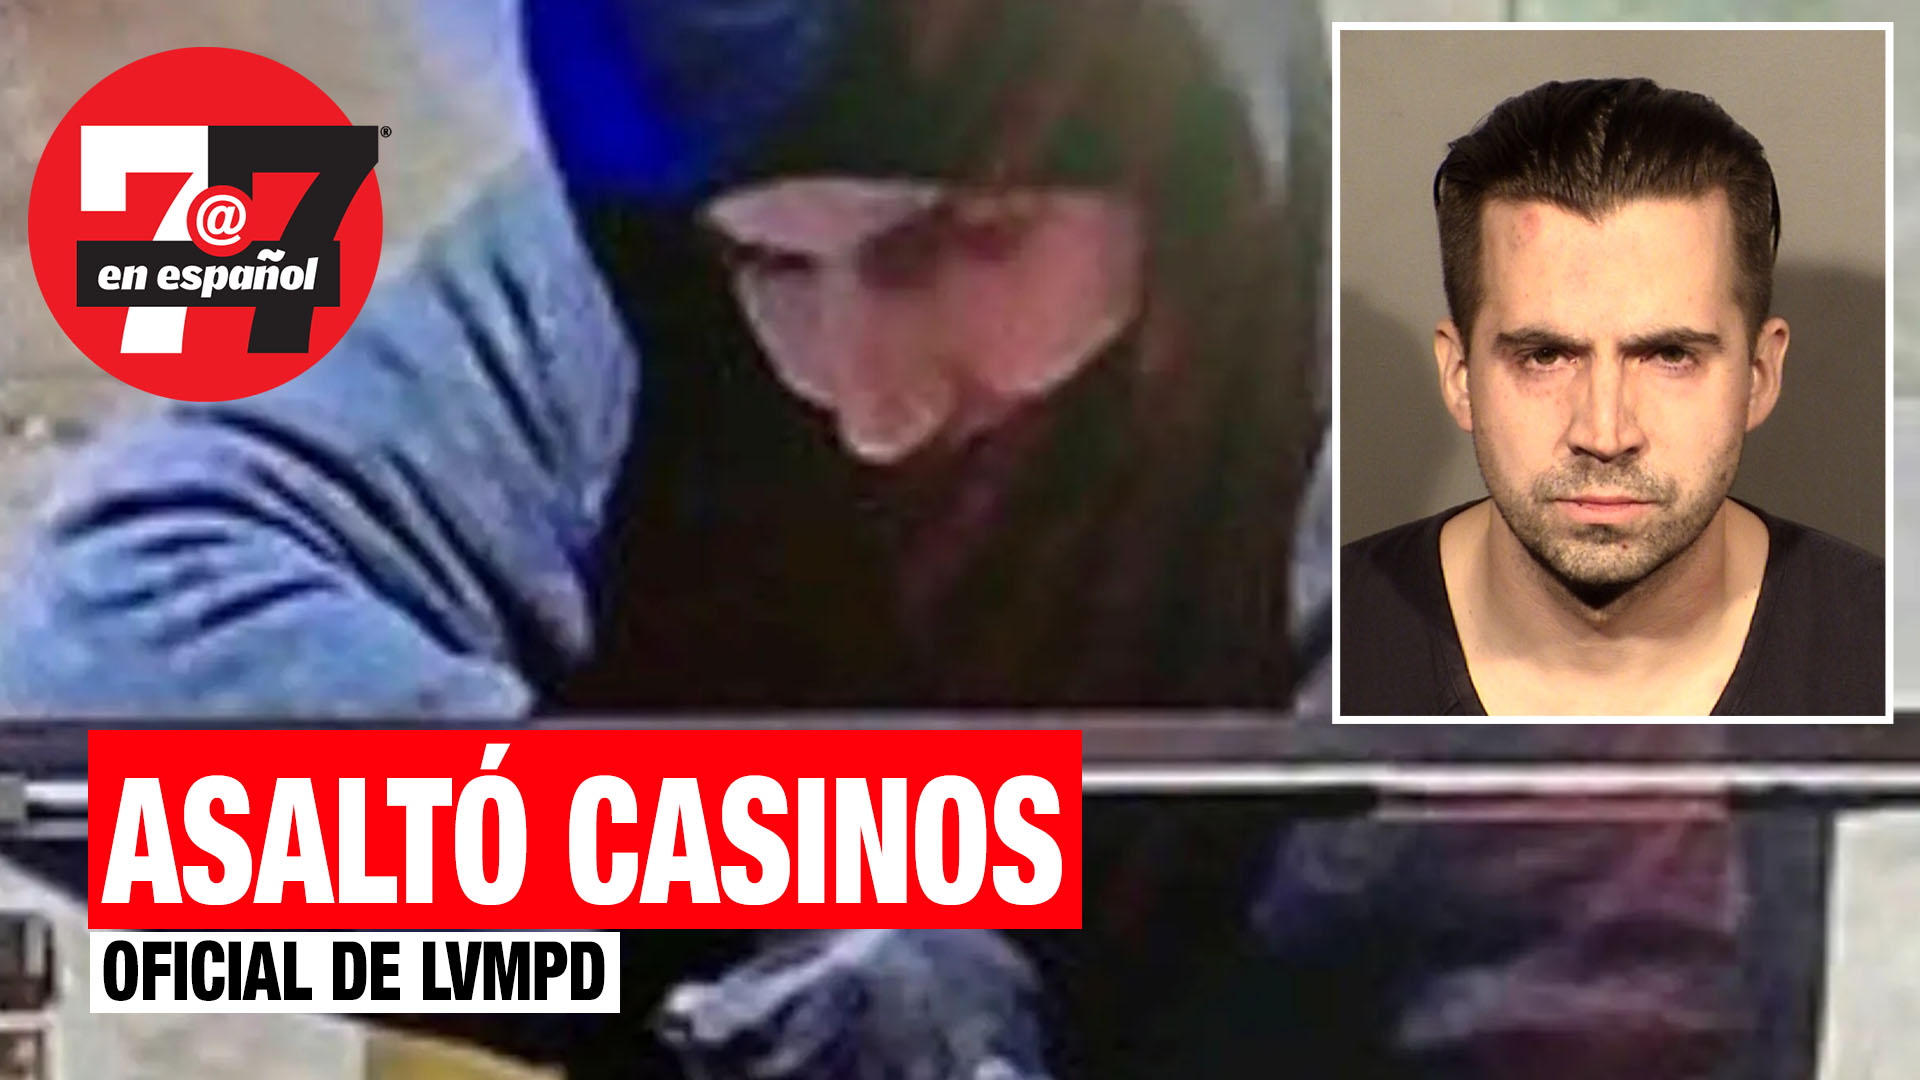 Noticias de Las Vegas | Oficial de metro asaltó 3 casinos y se llevó miles de dólares